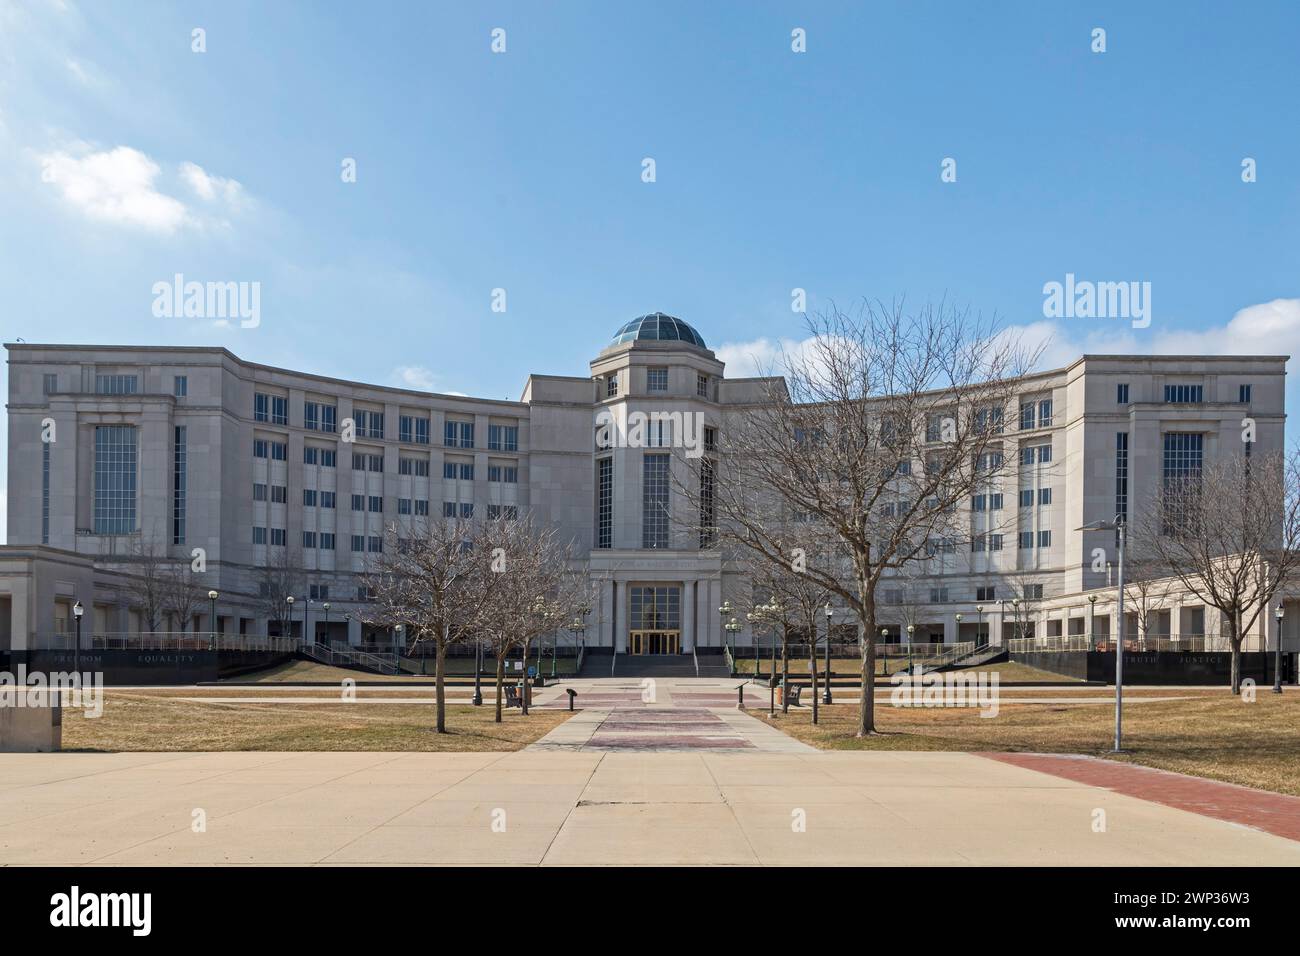 Lansing, Michigan - El Salón de Justicia de Michigan. El edificio alberga la Corte Suprema de Michigan y otros tribunales. Foto de stock